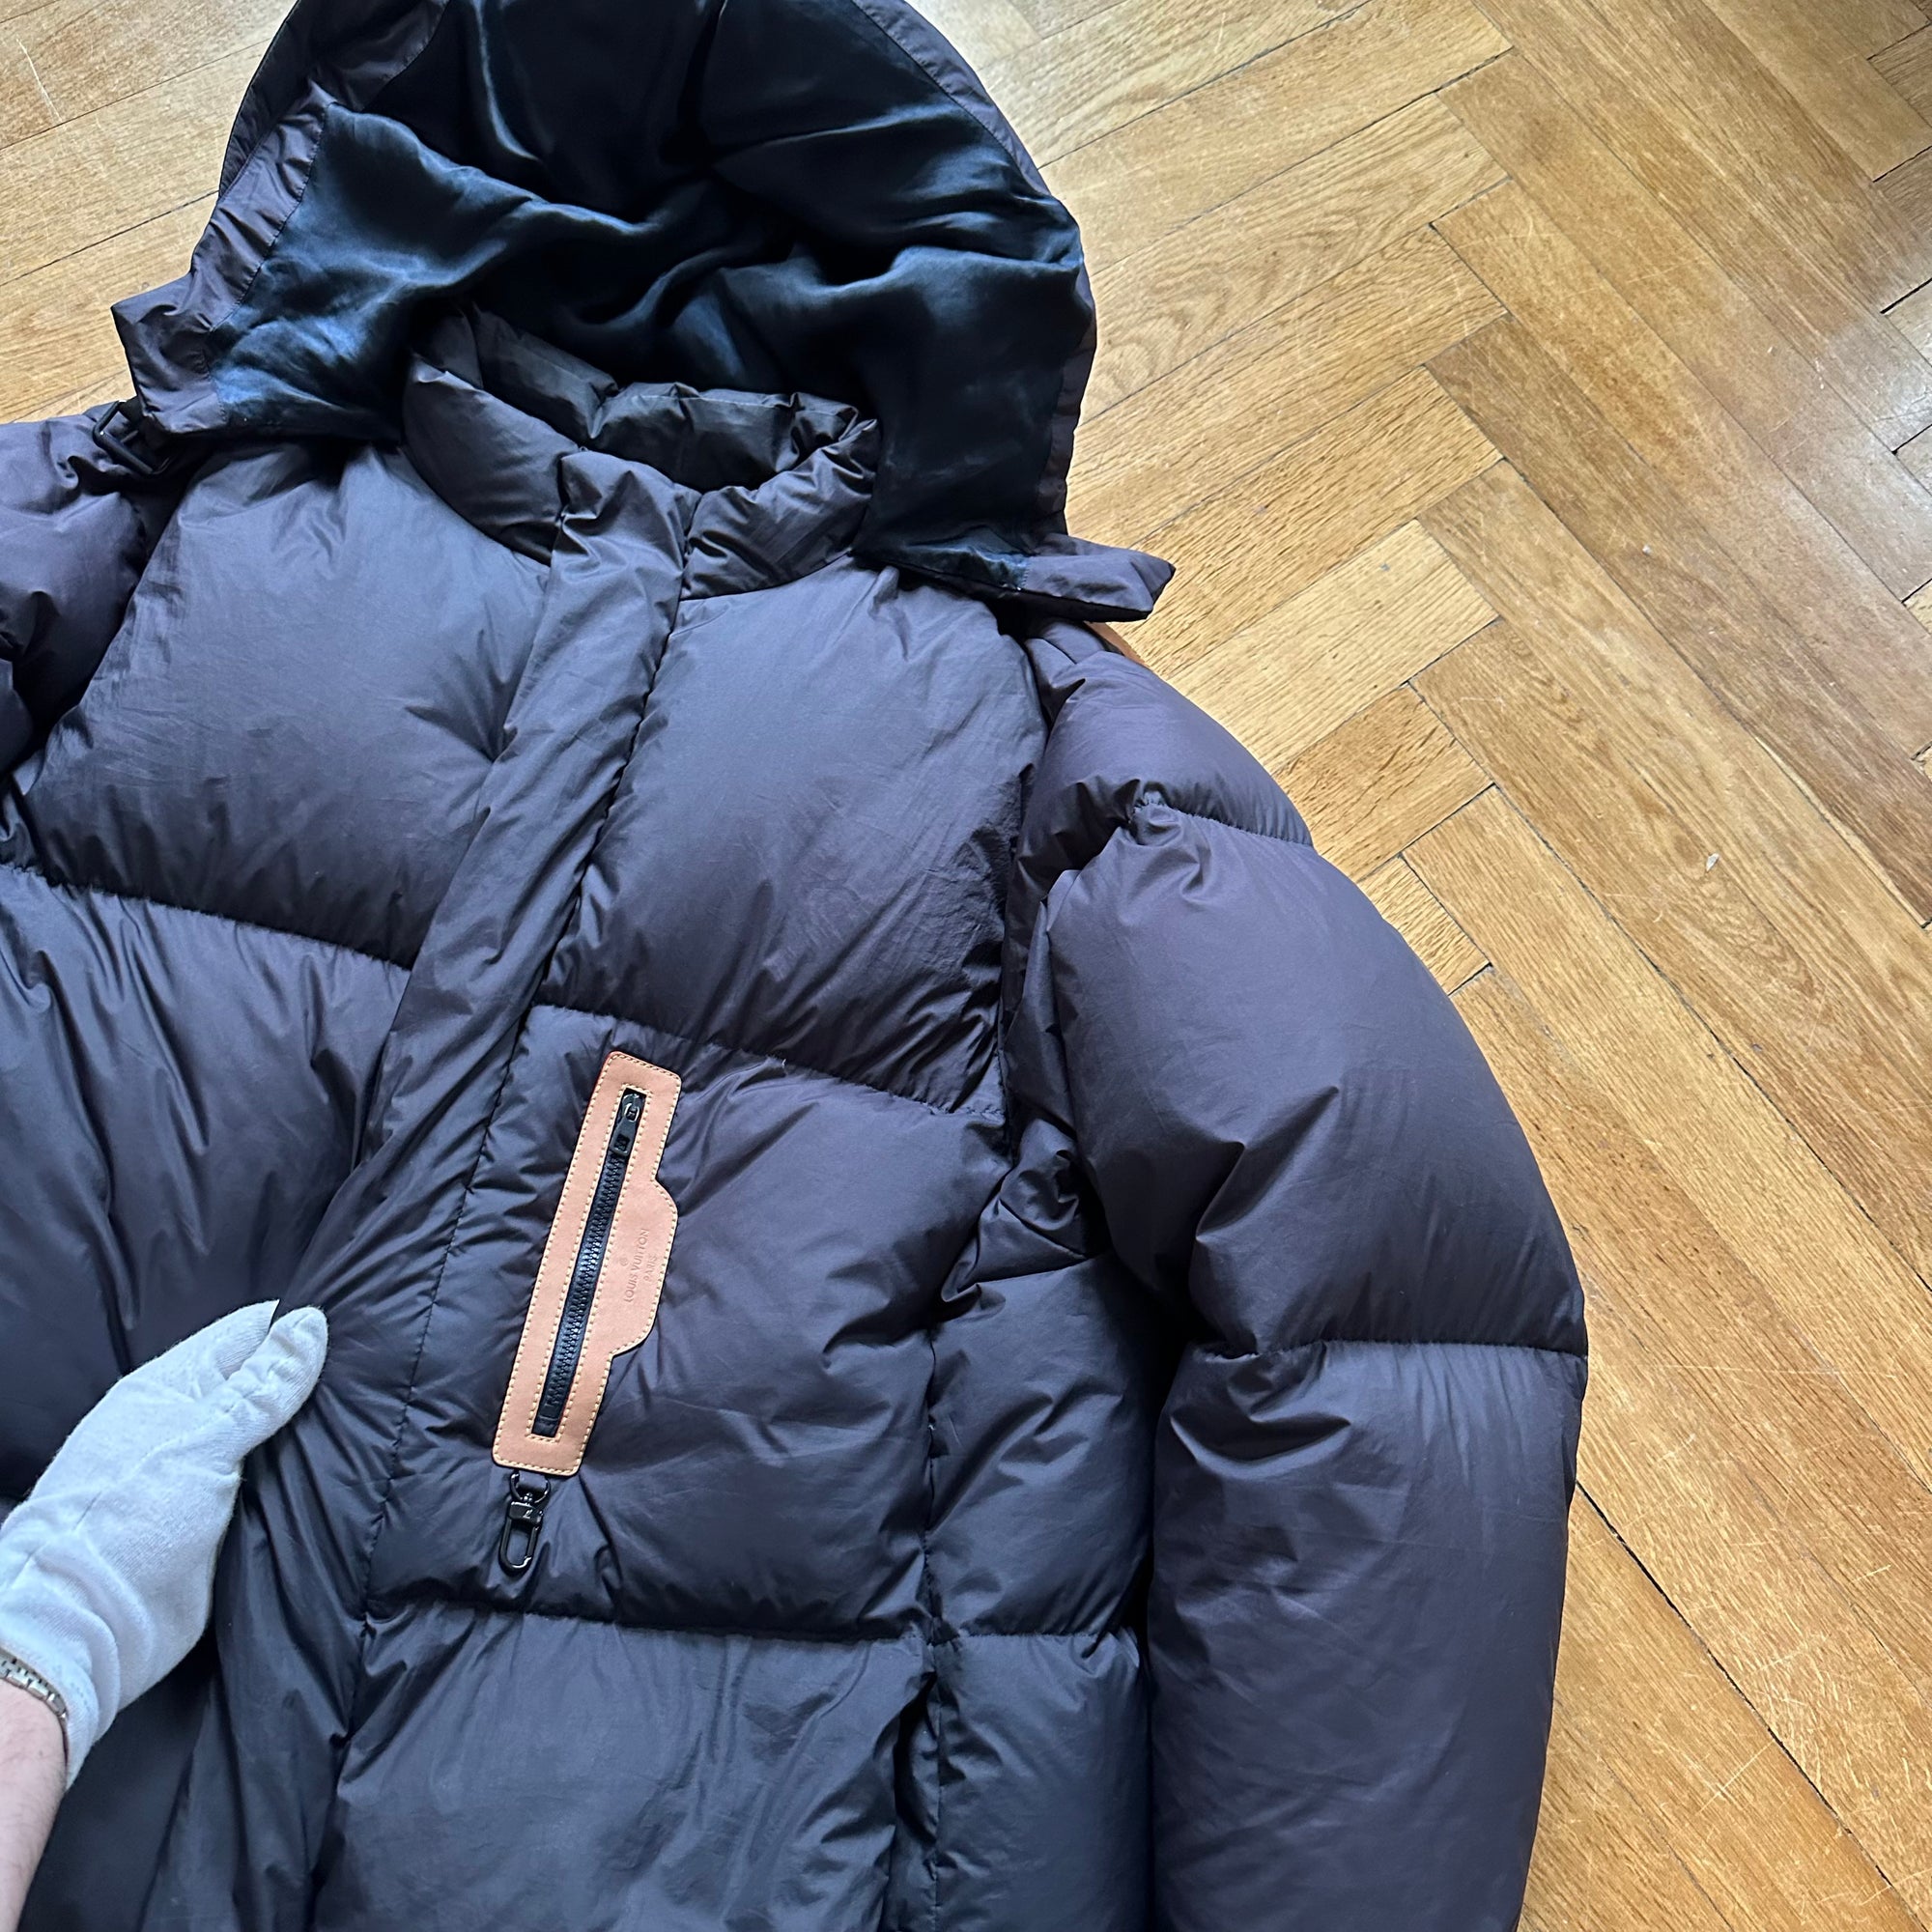 Louis Vuitton AW19 show puffer jacket